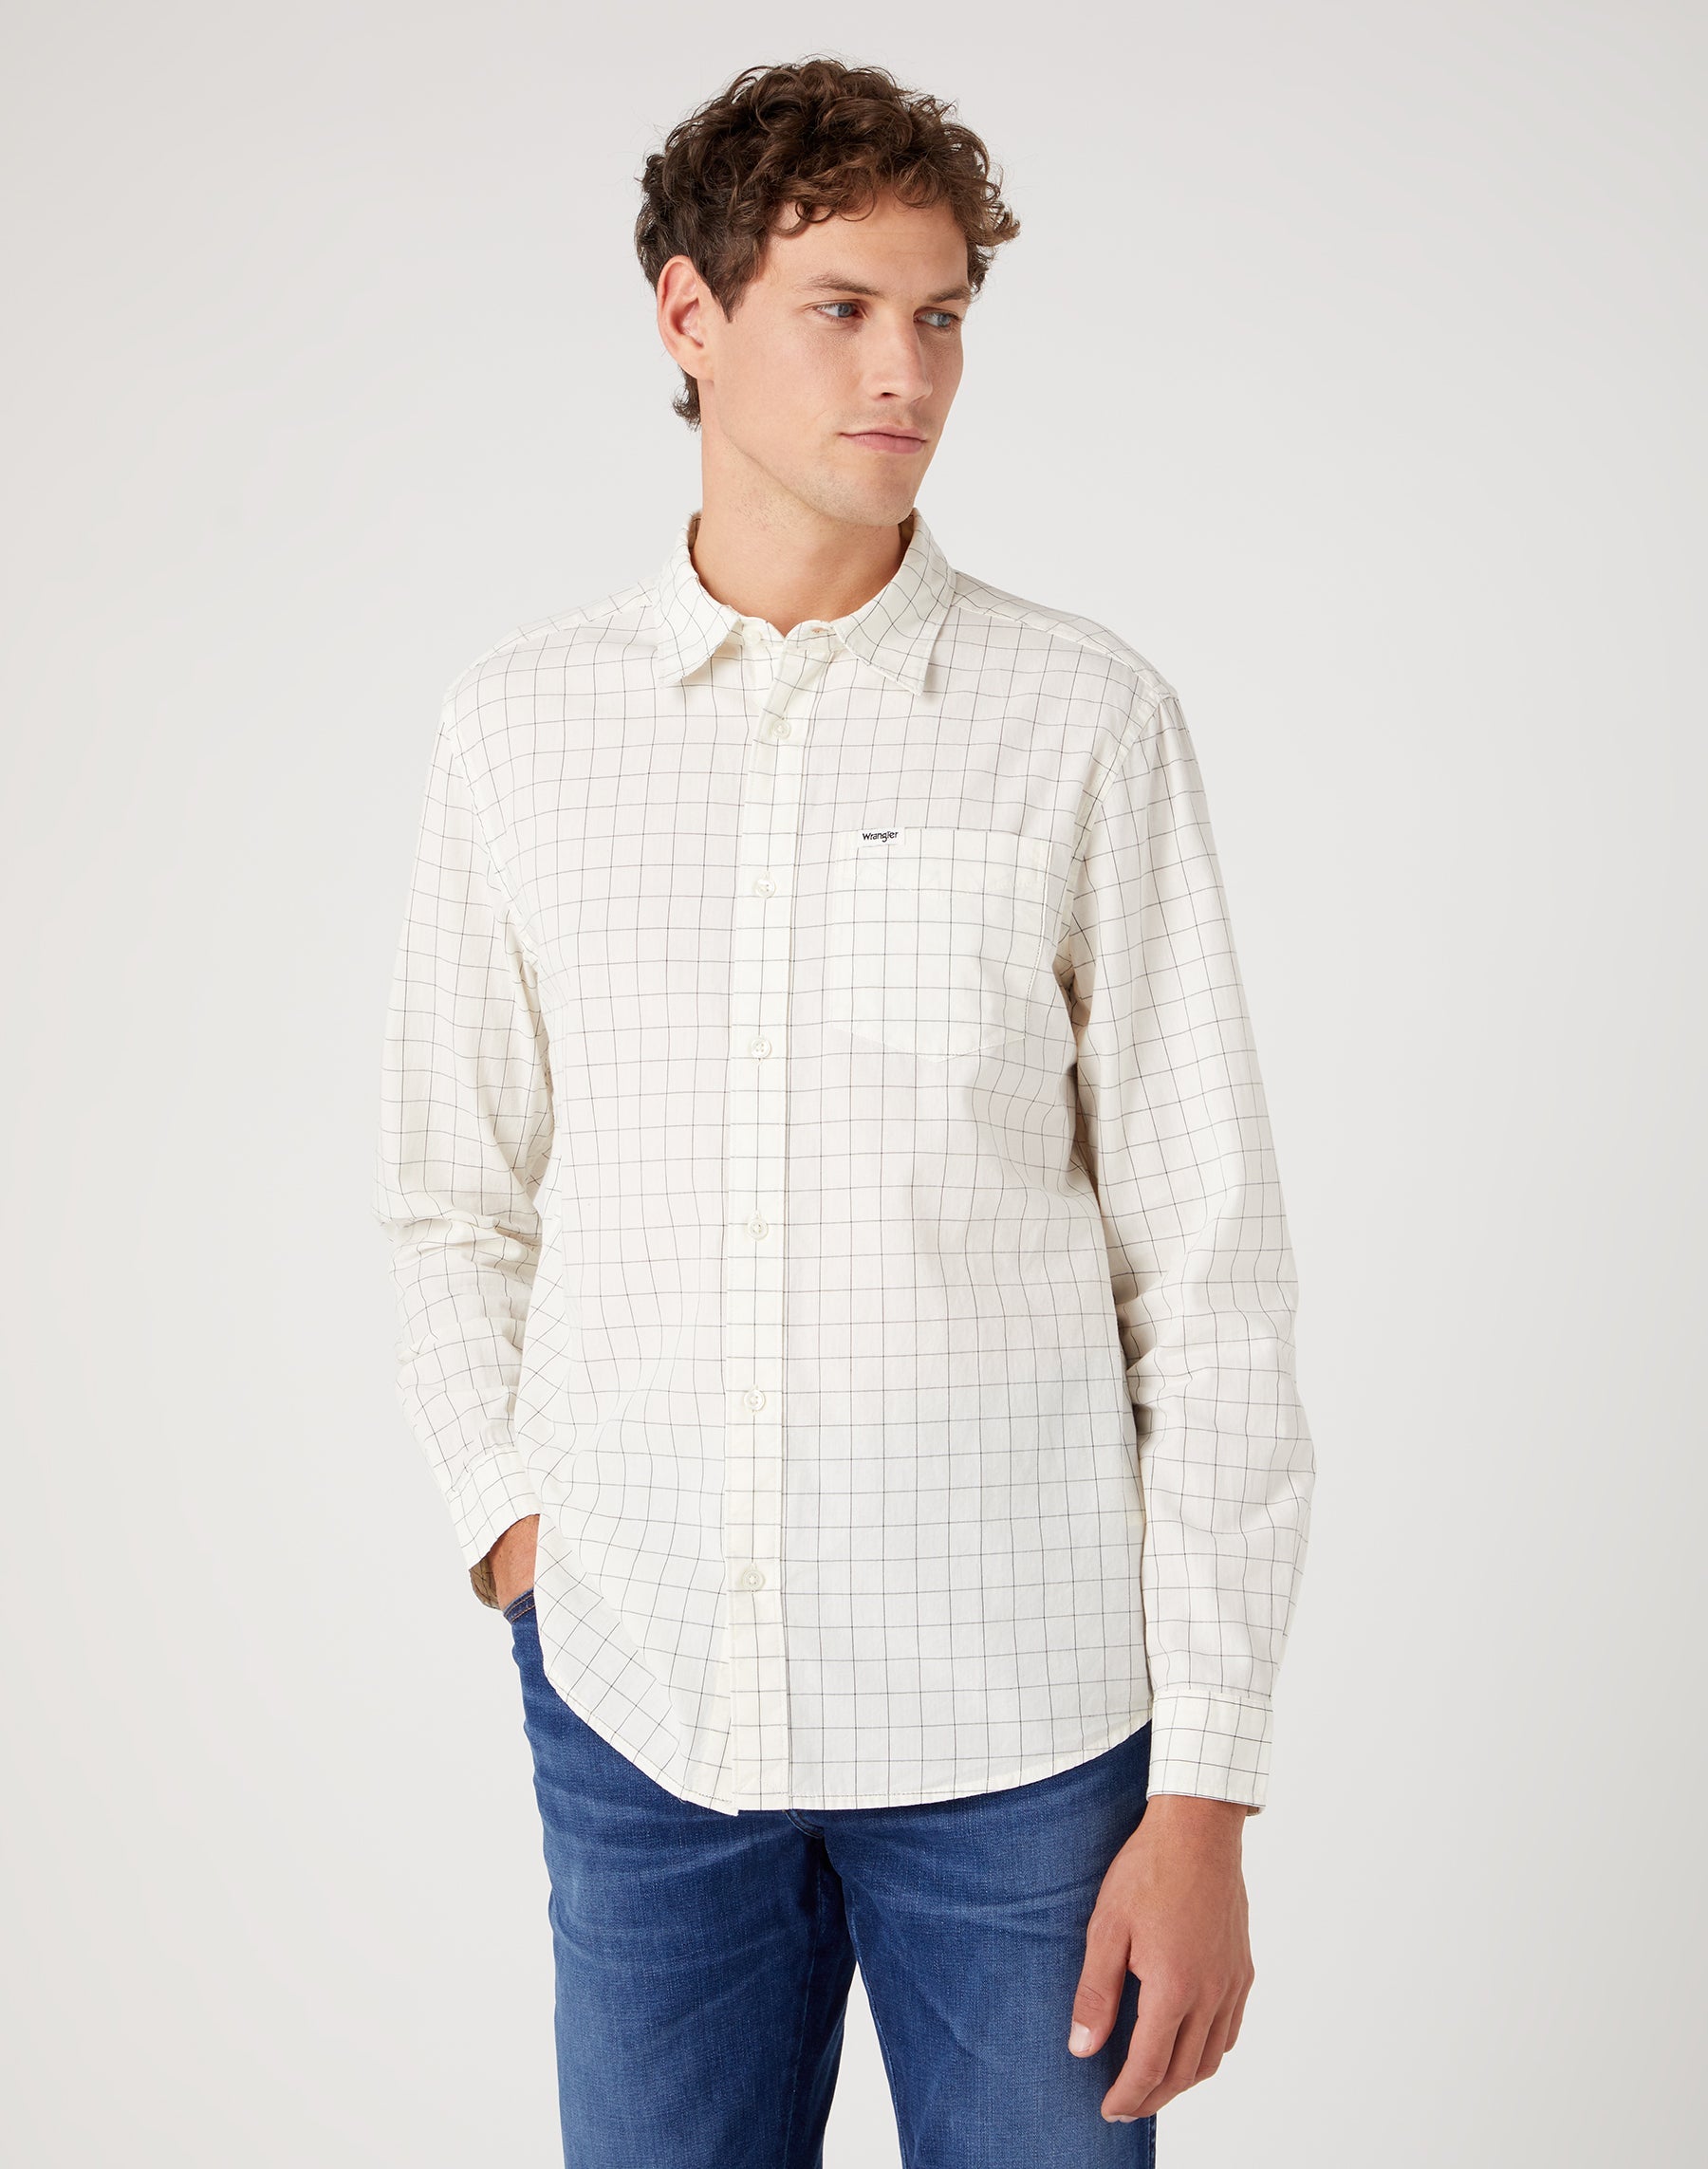 One Pocket Shirt in Worn White Hemden Wrangler   